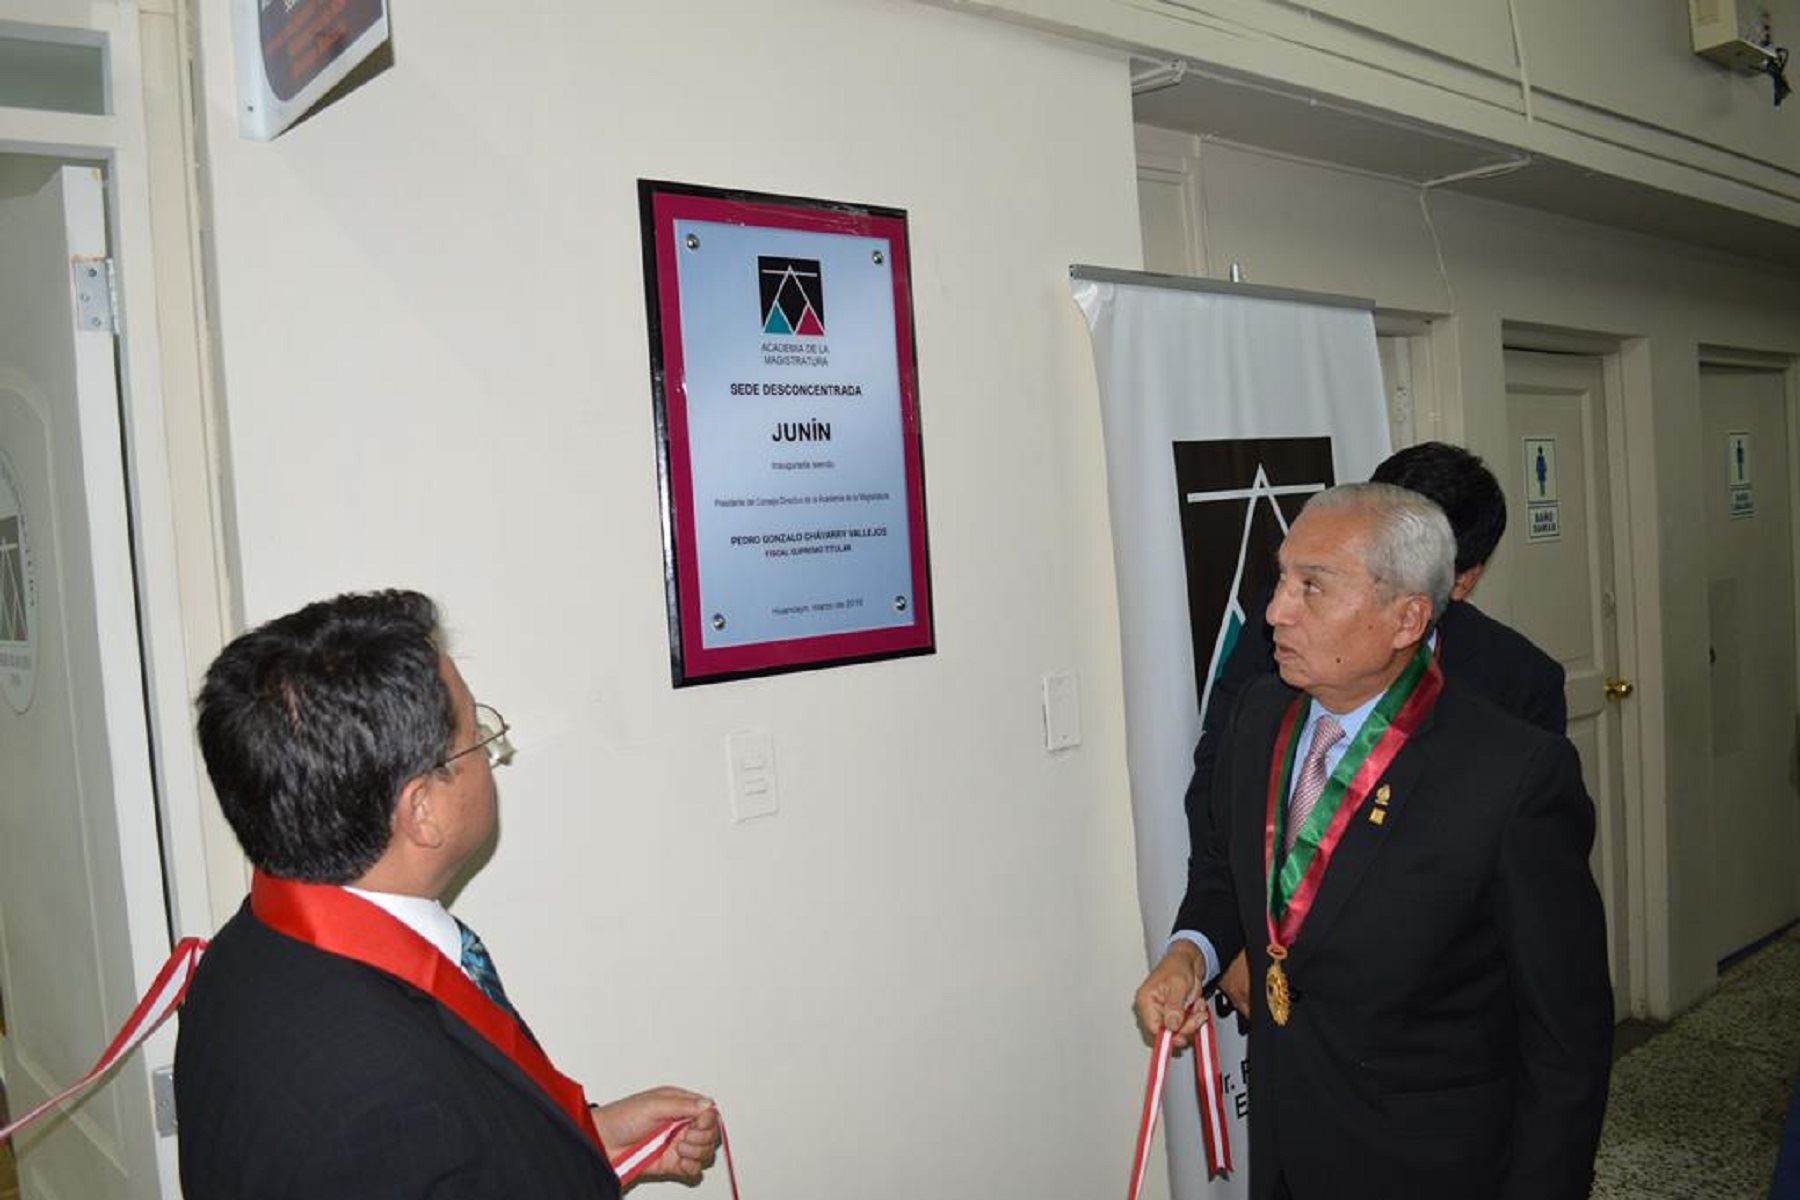 Academia de la Magistratura inauguró una nueva sede desconcertada en Junín.